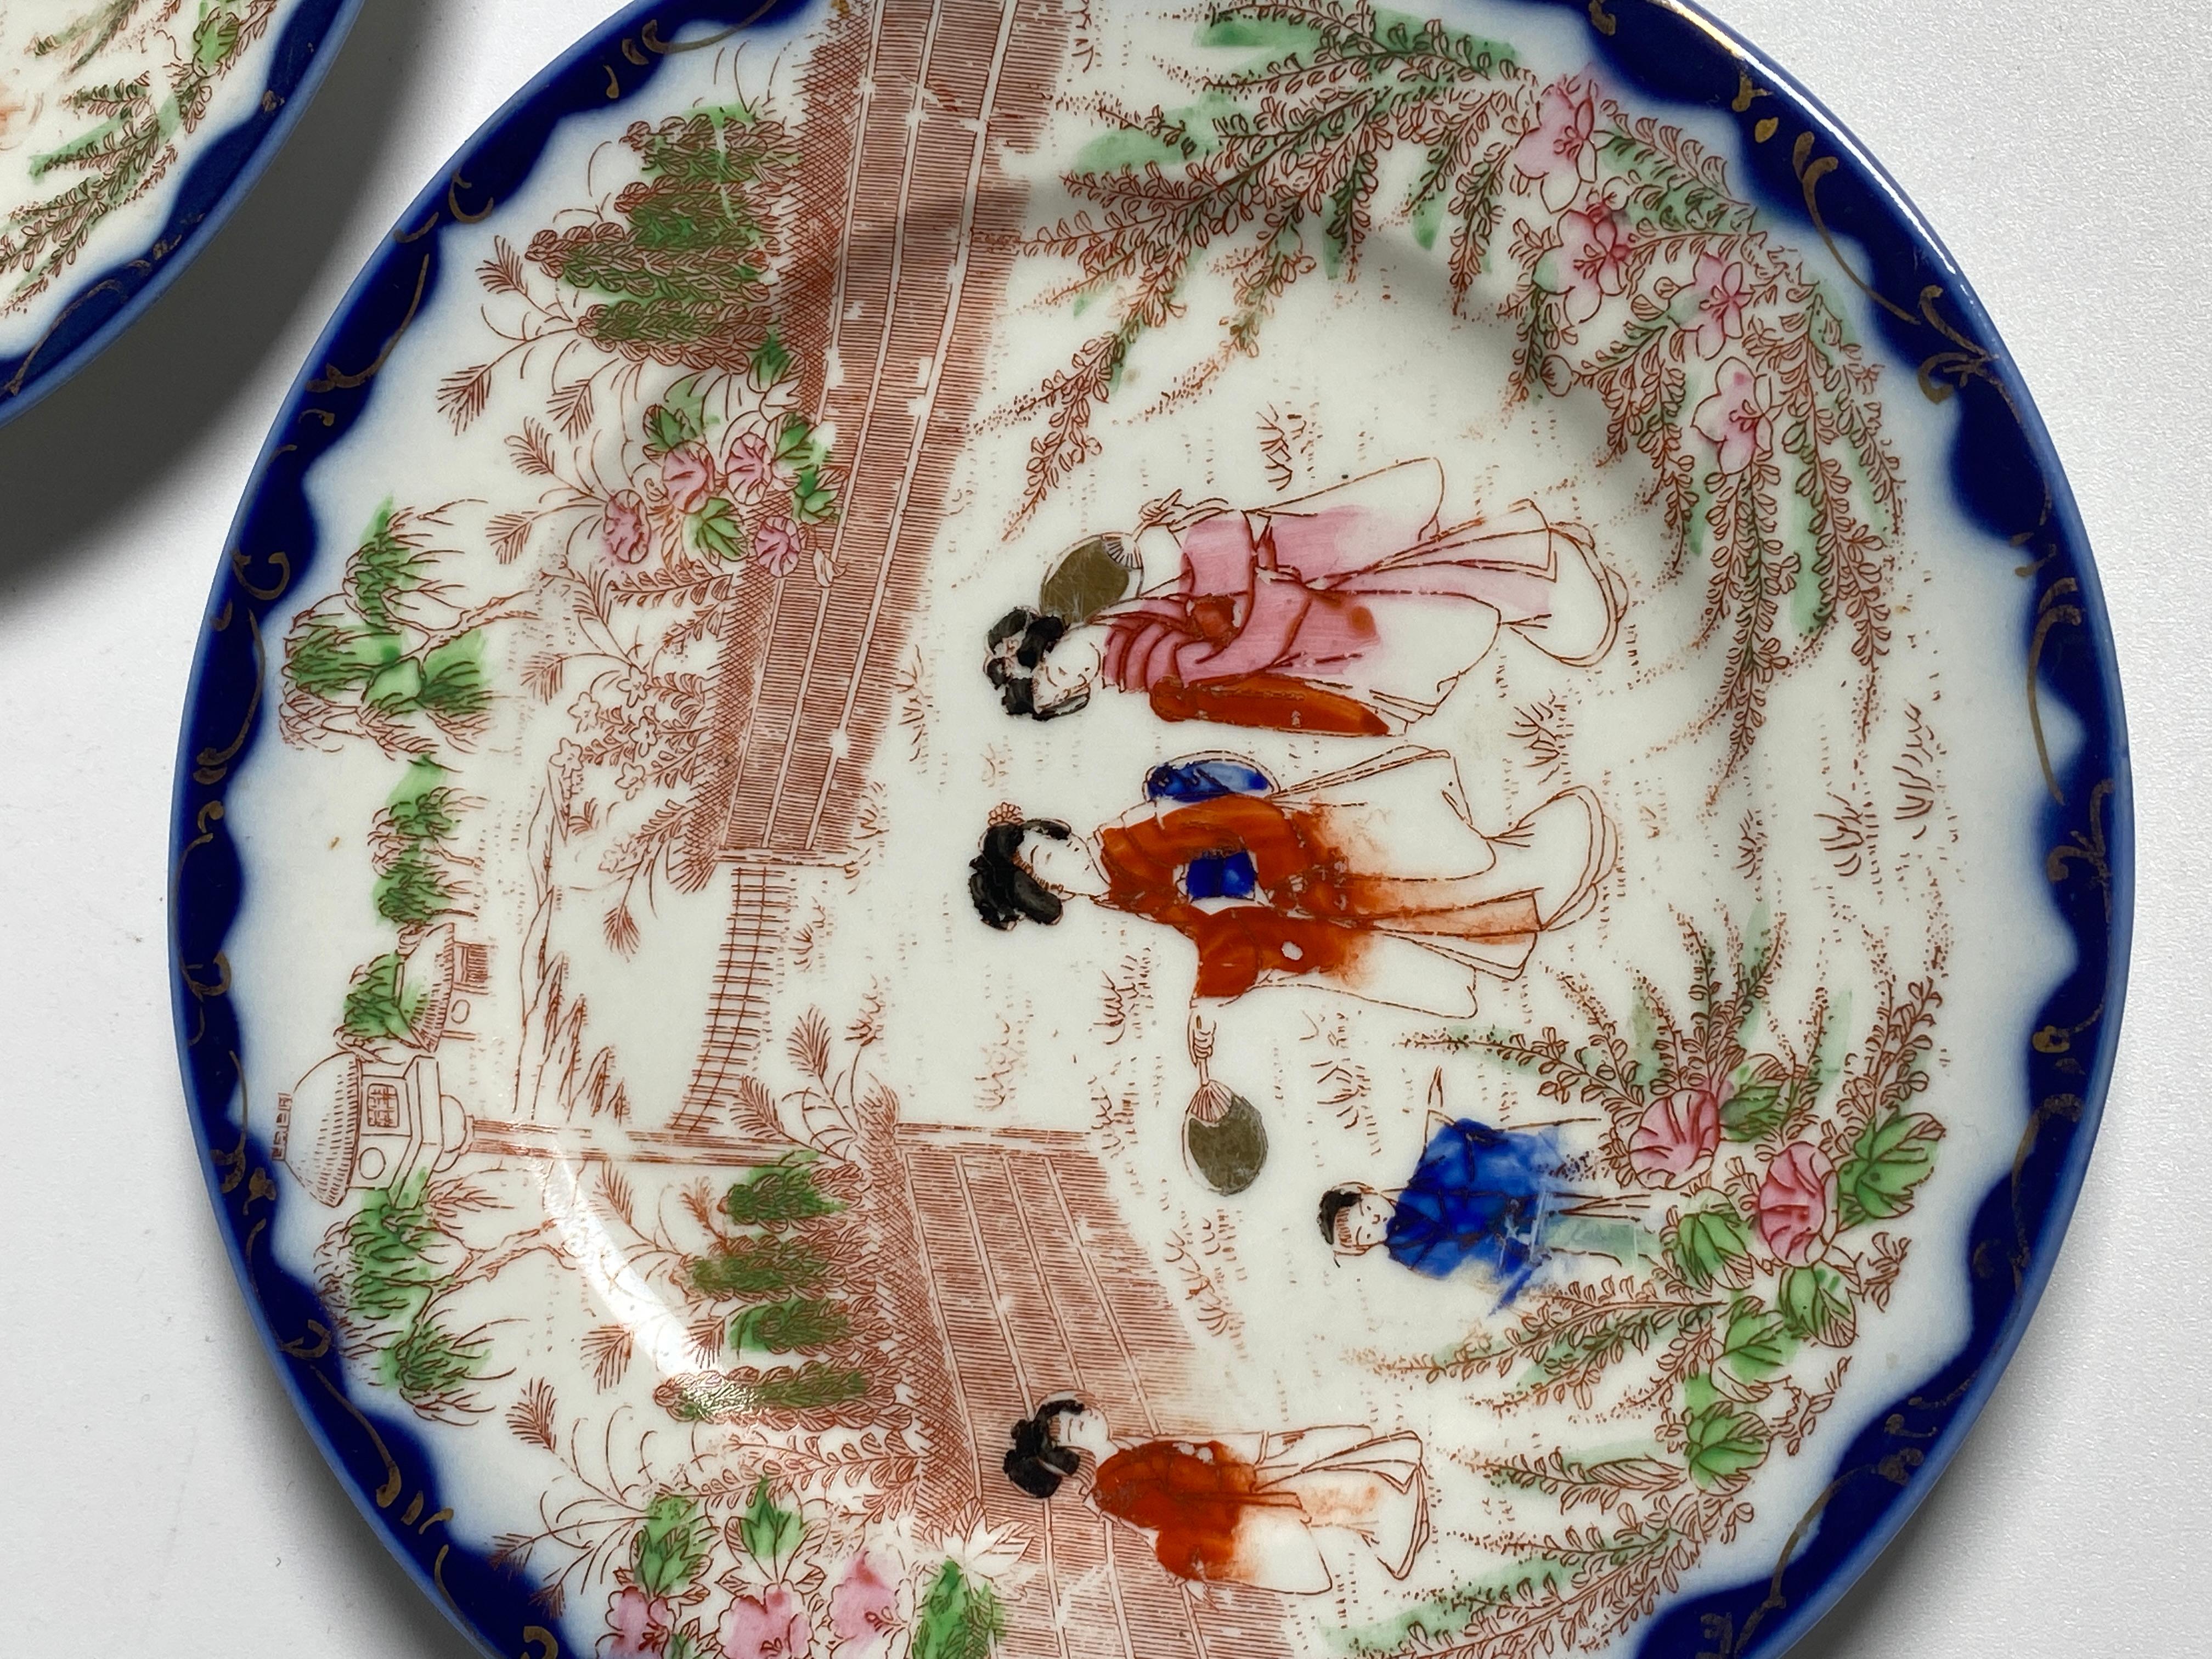 Paire d'assiettes en porcelaine japonaise. Les couleurs sont le bleu, le rose et le vert. Ils ont été fabriqués au Japon au 19ème siècle.